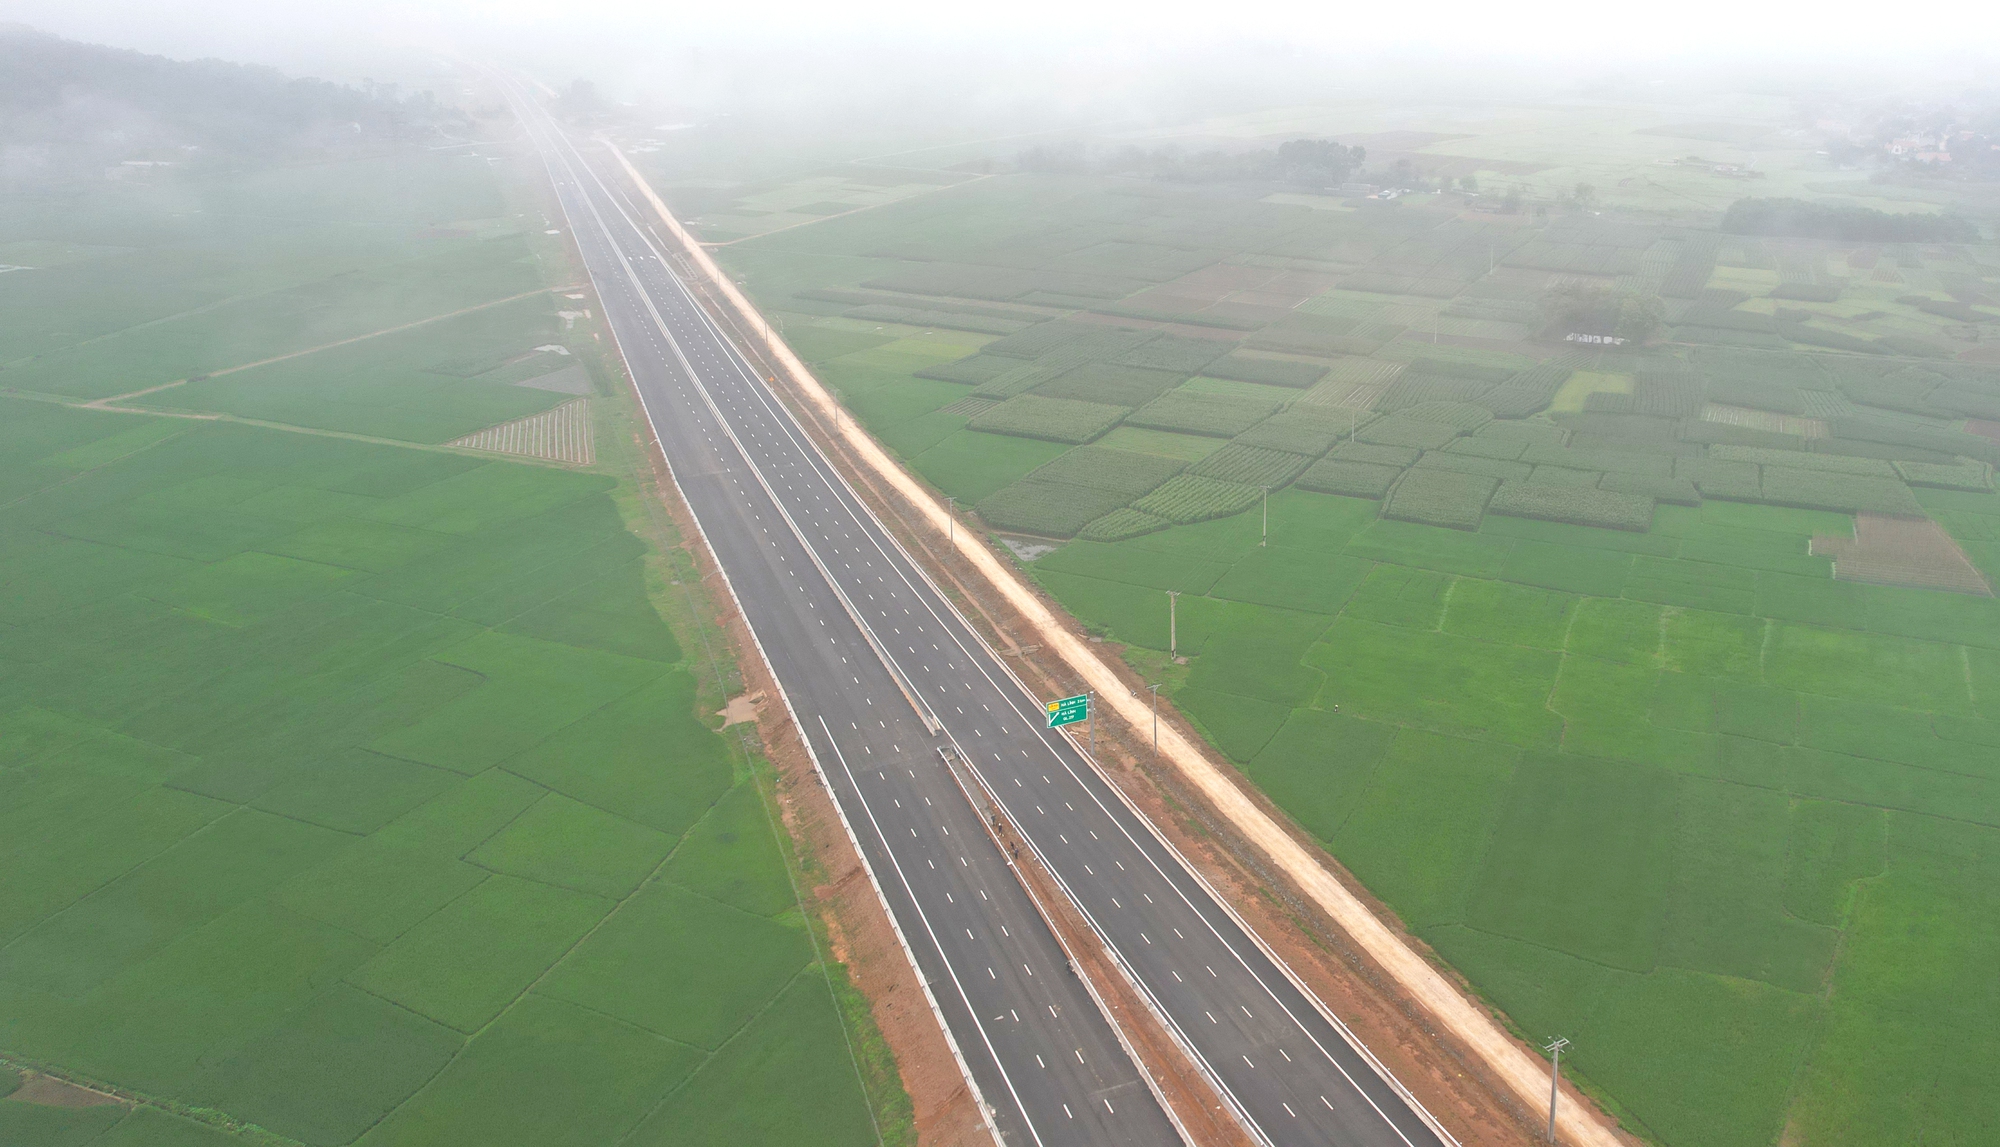 Hoàn thành hầm lớn nhất cao tốc Bắc - Nam qua Ninh Bình - Thanh Hóa  - Ảnh 16.